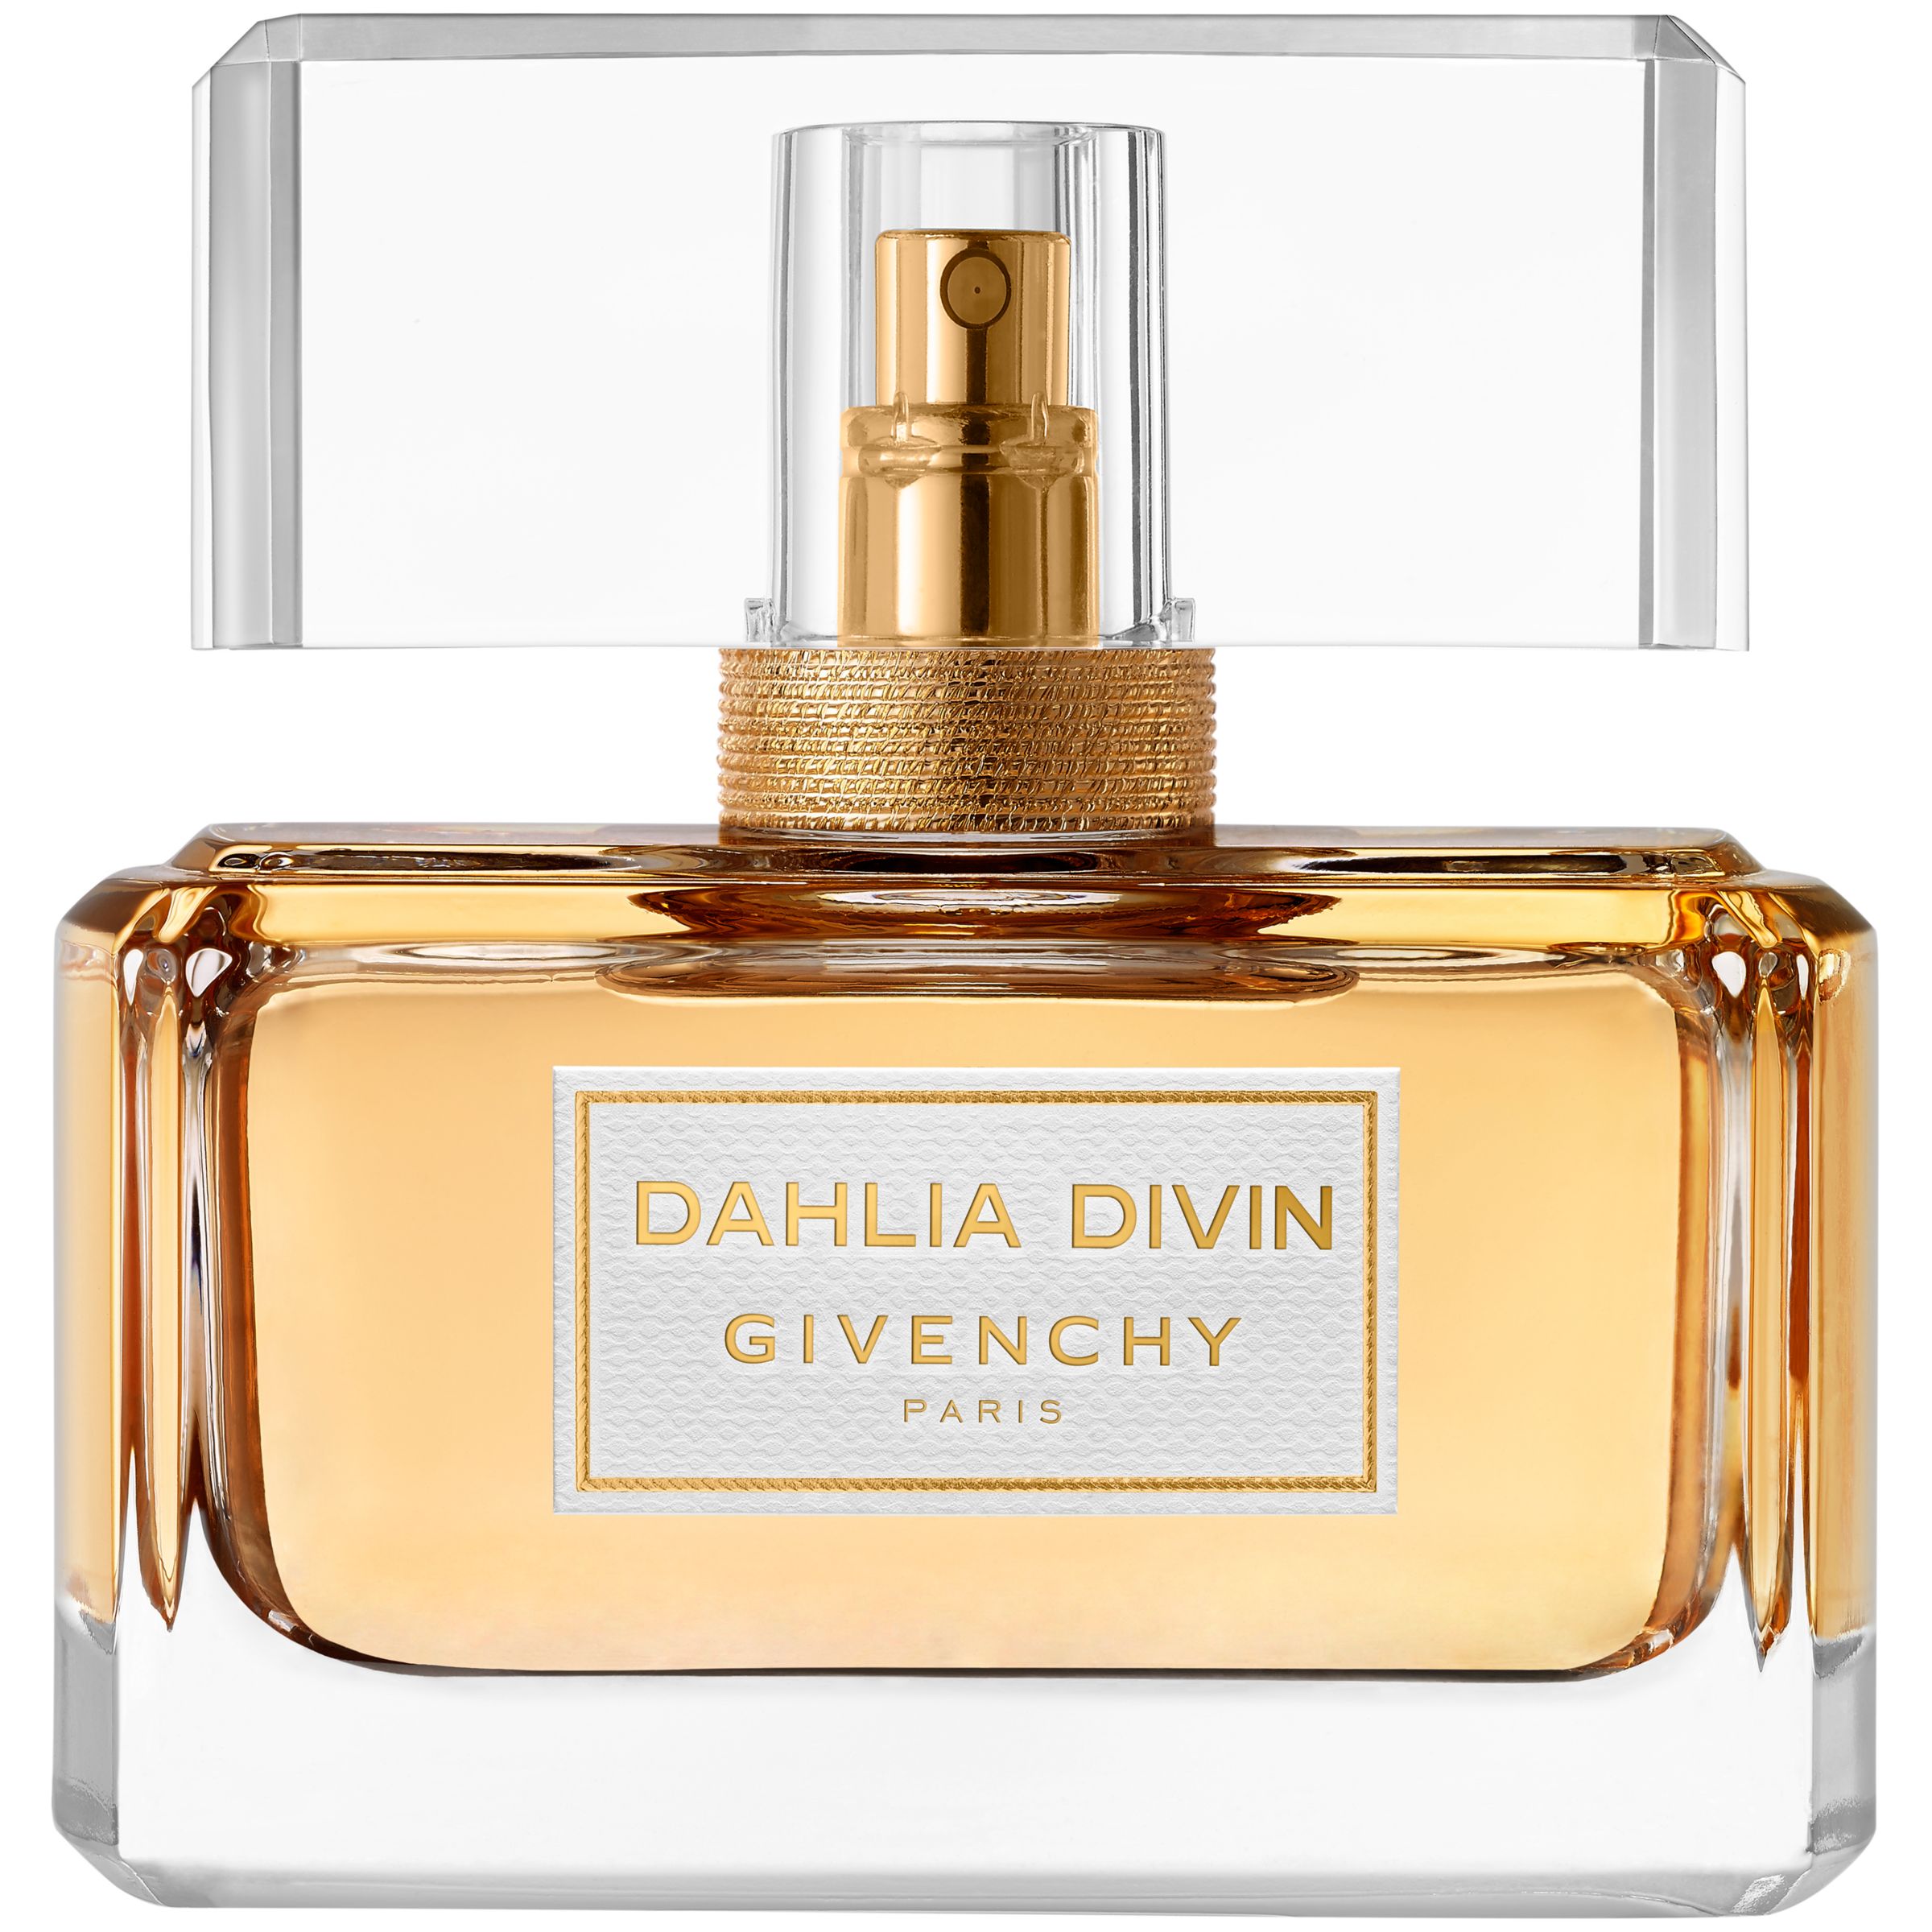 Givenchy Dahlia Divin Eau de Parfum, 50ml at John Lewis & Partners